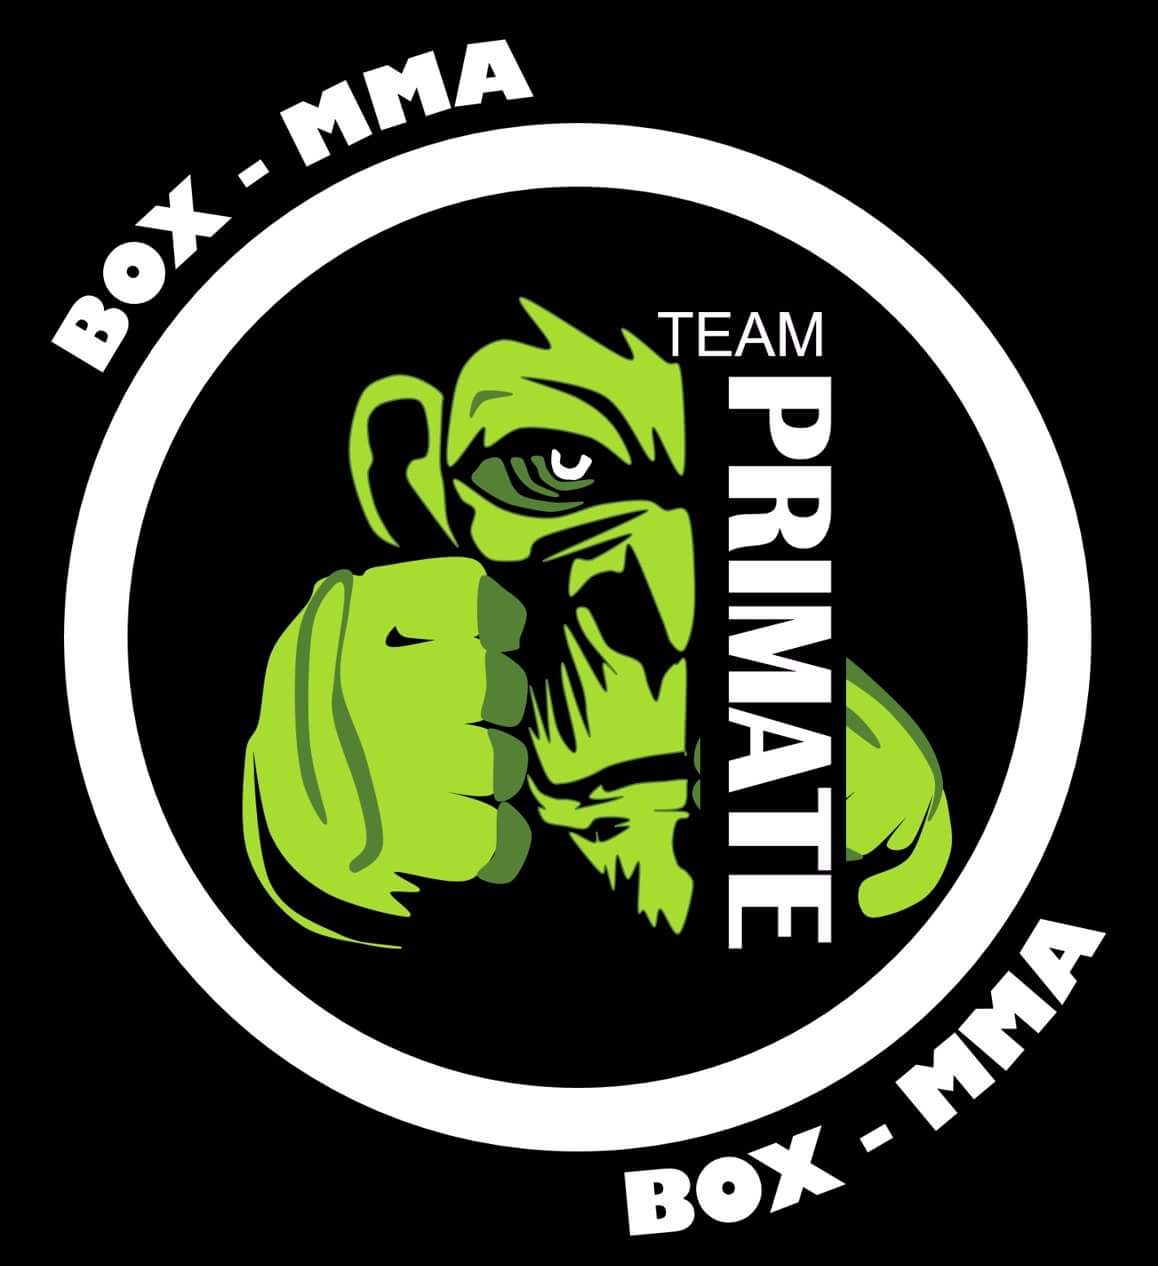 Team “PRIMATE”, BOX – MMA